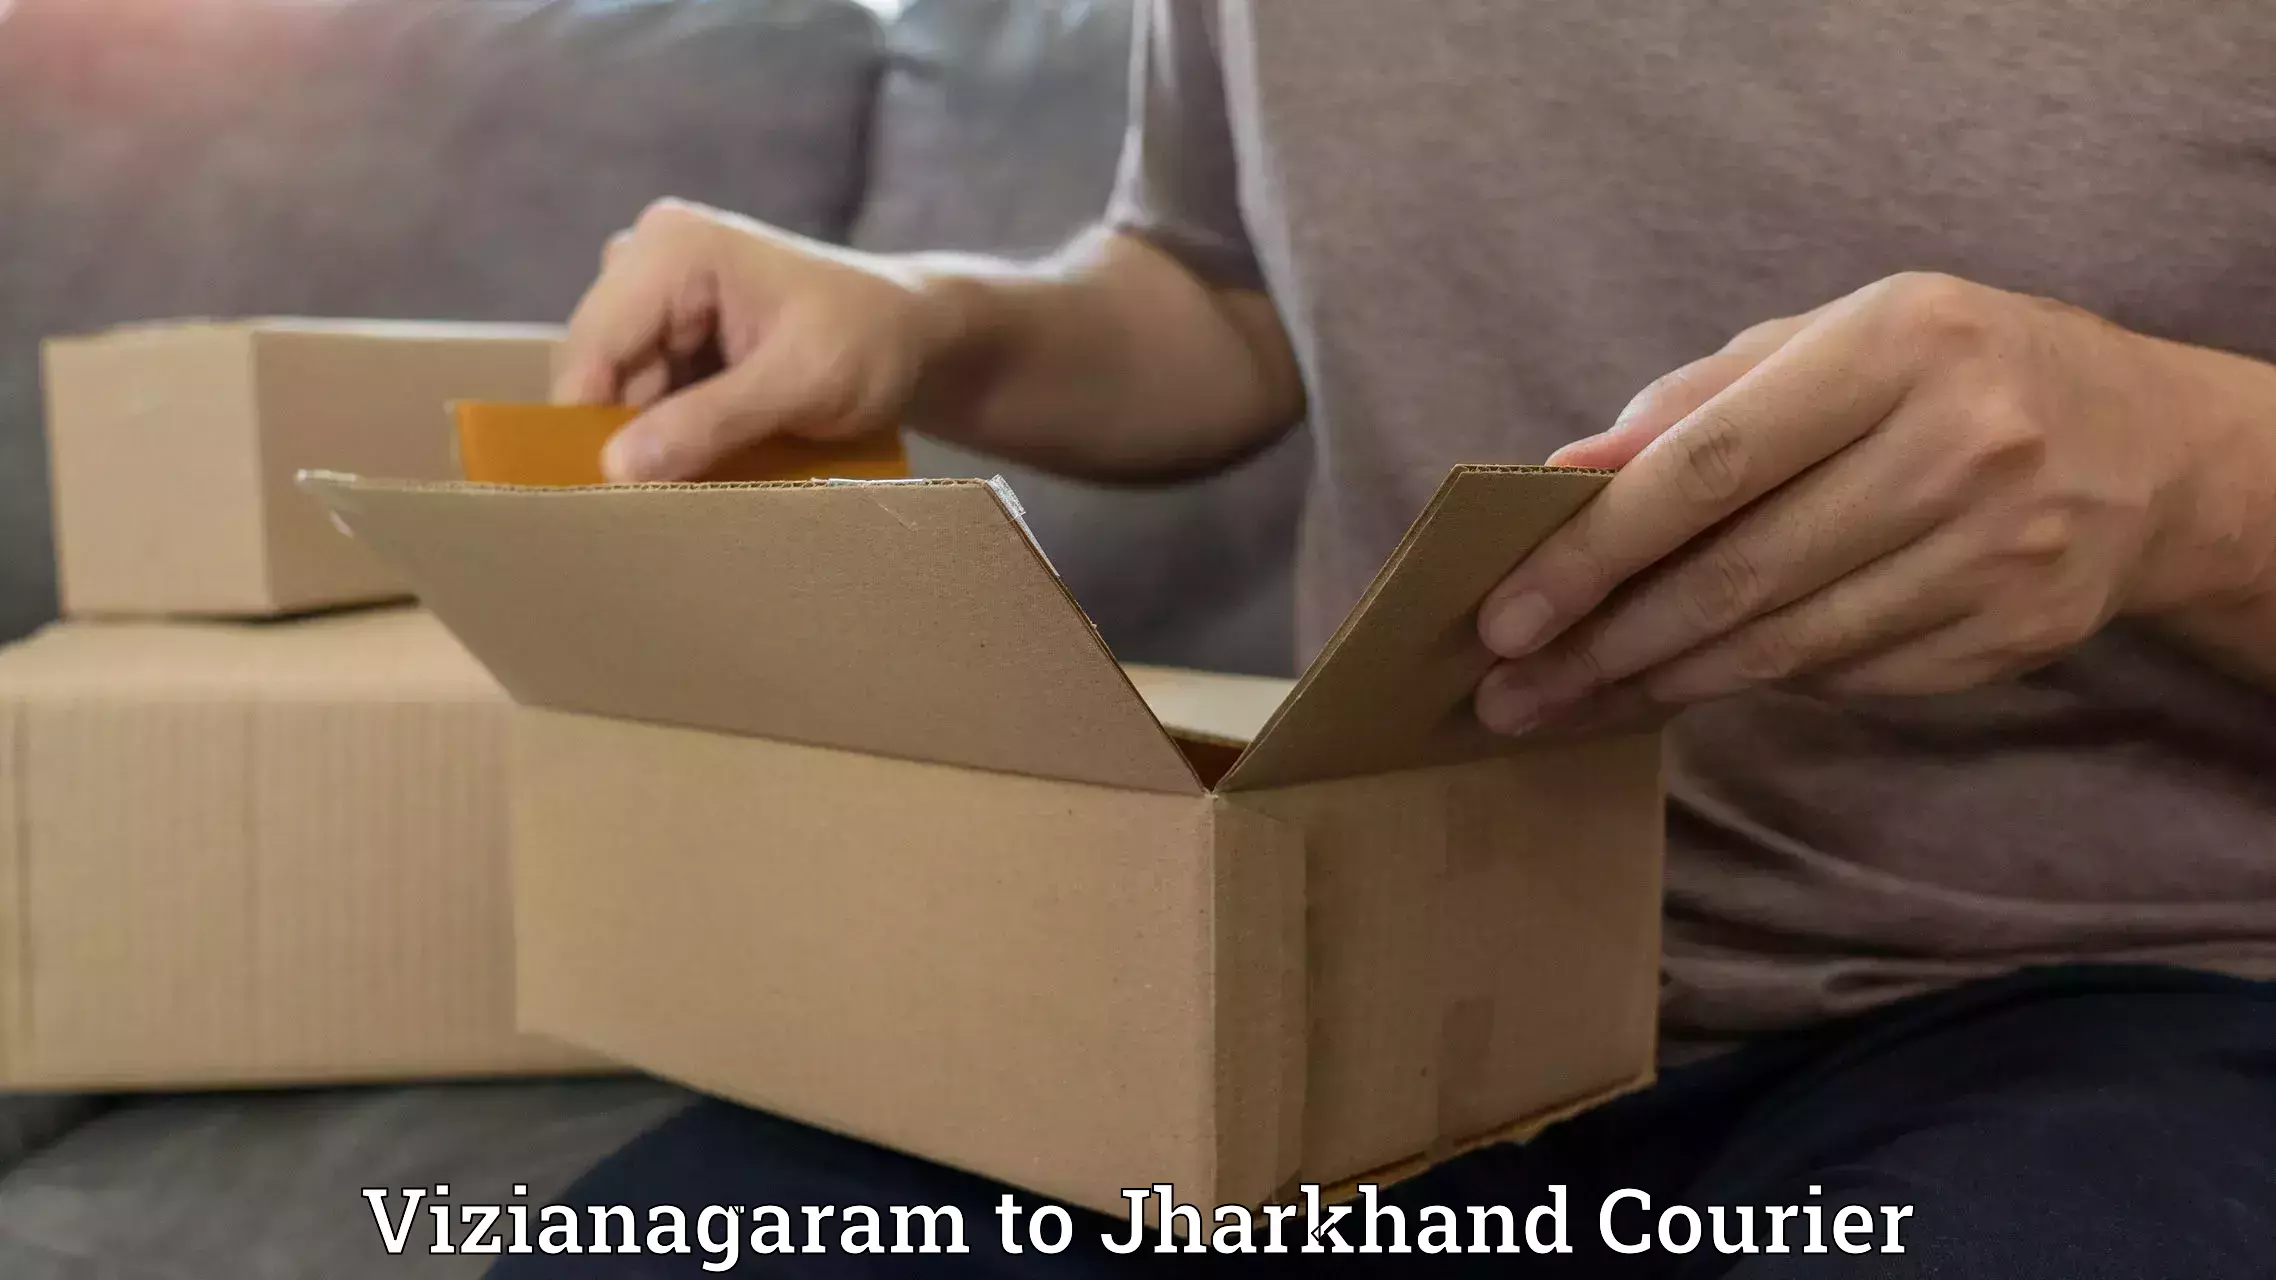 Personalized courier experiences Vizianagaram to Rajmahal